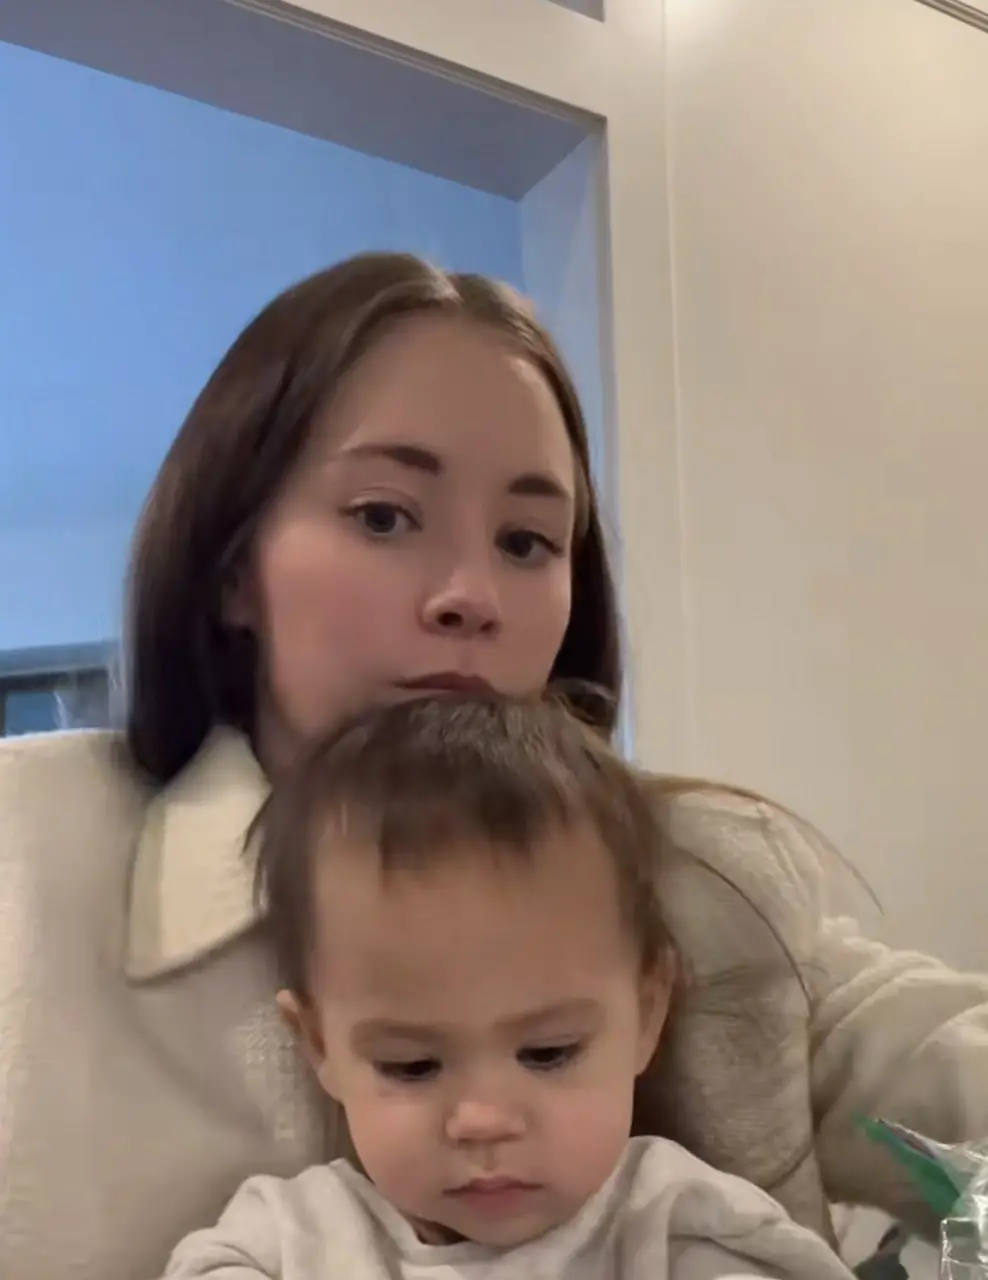 L'utilisatrice de TikTok Elizabeth avec son enfant, comme on le voit dans une vidéo datée du 1er décembre 2022 | Source : Tiktok.com/@elizabethacting